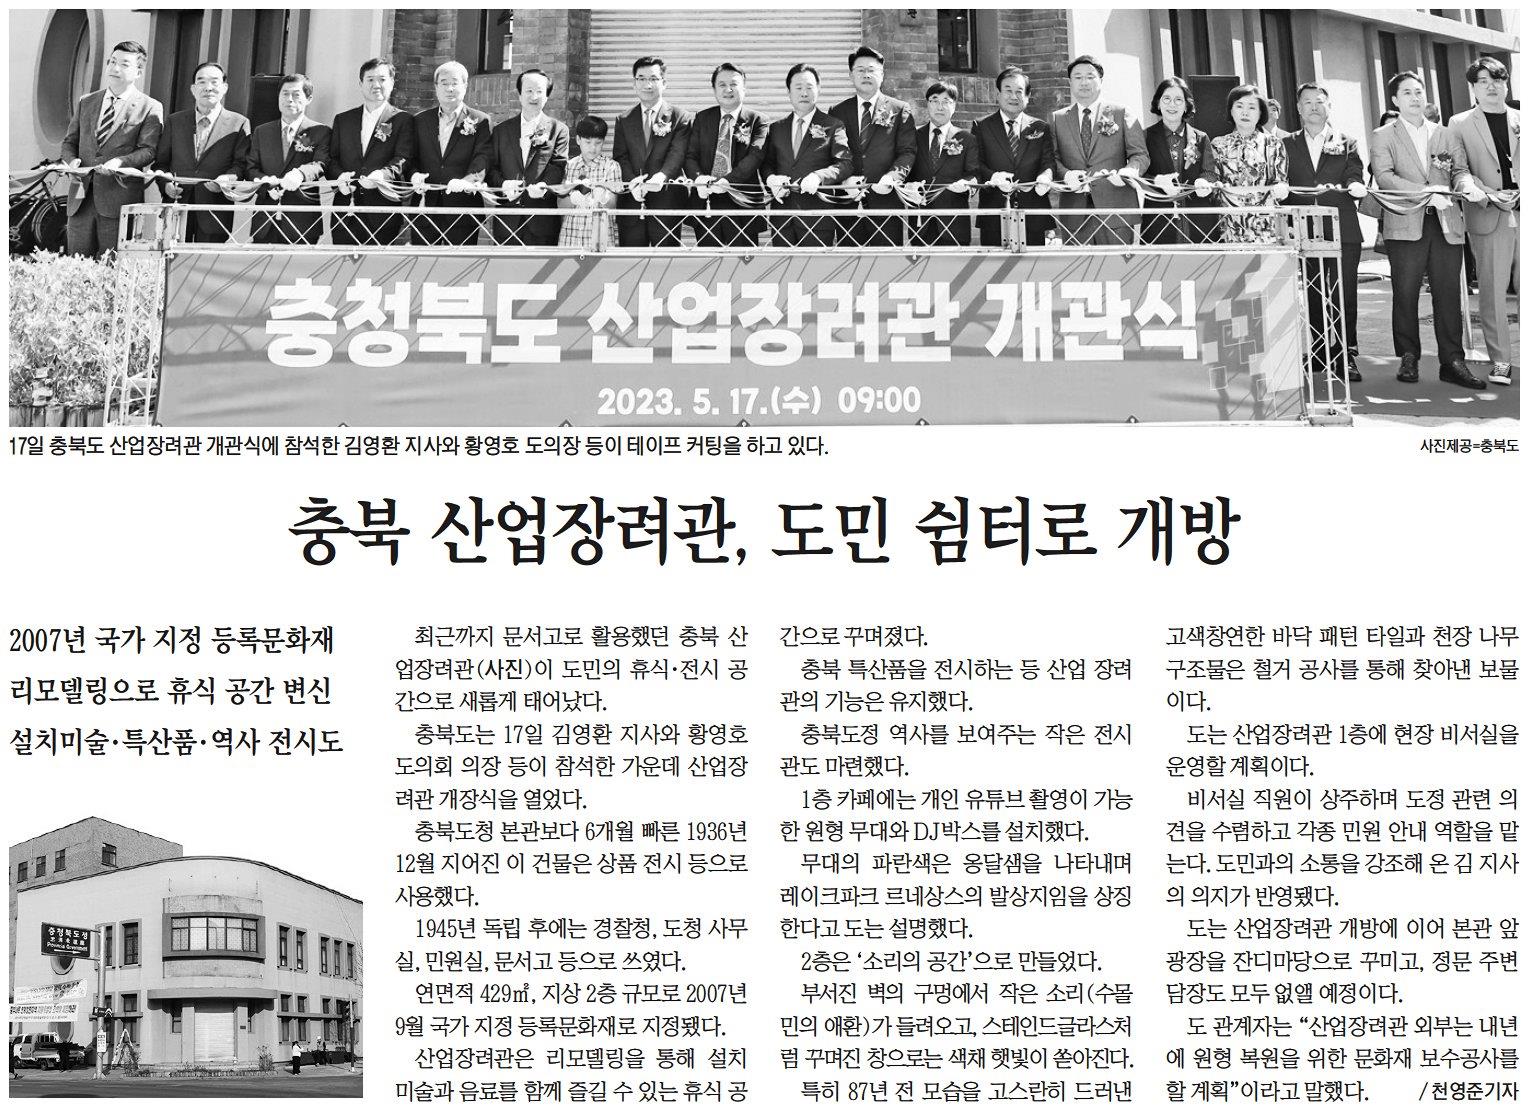 김현문 교육위원장, 충청북도 산업장려관 개관식 참석 - 2